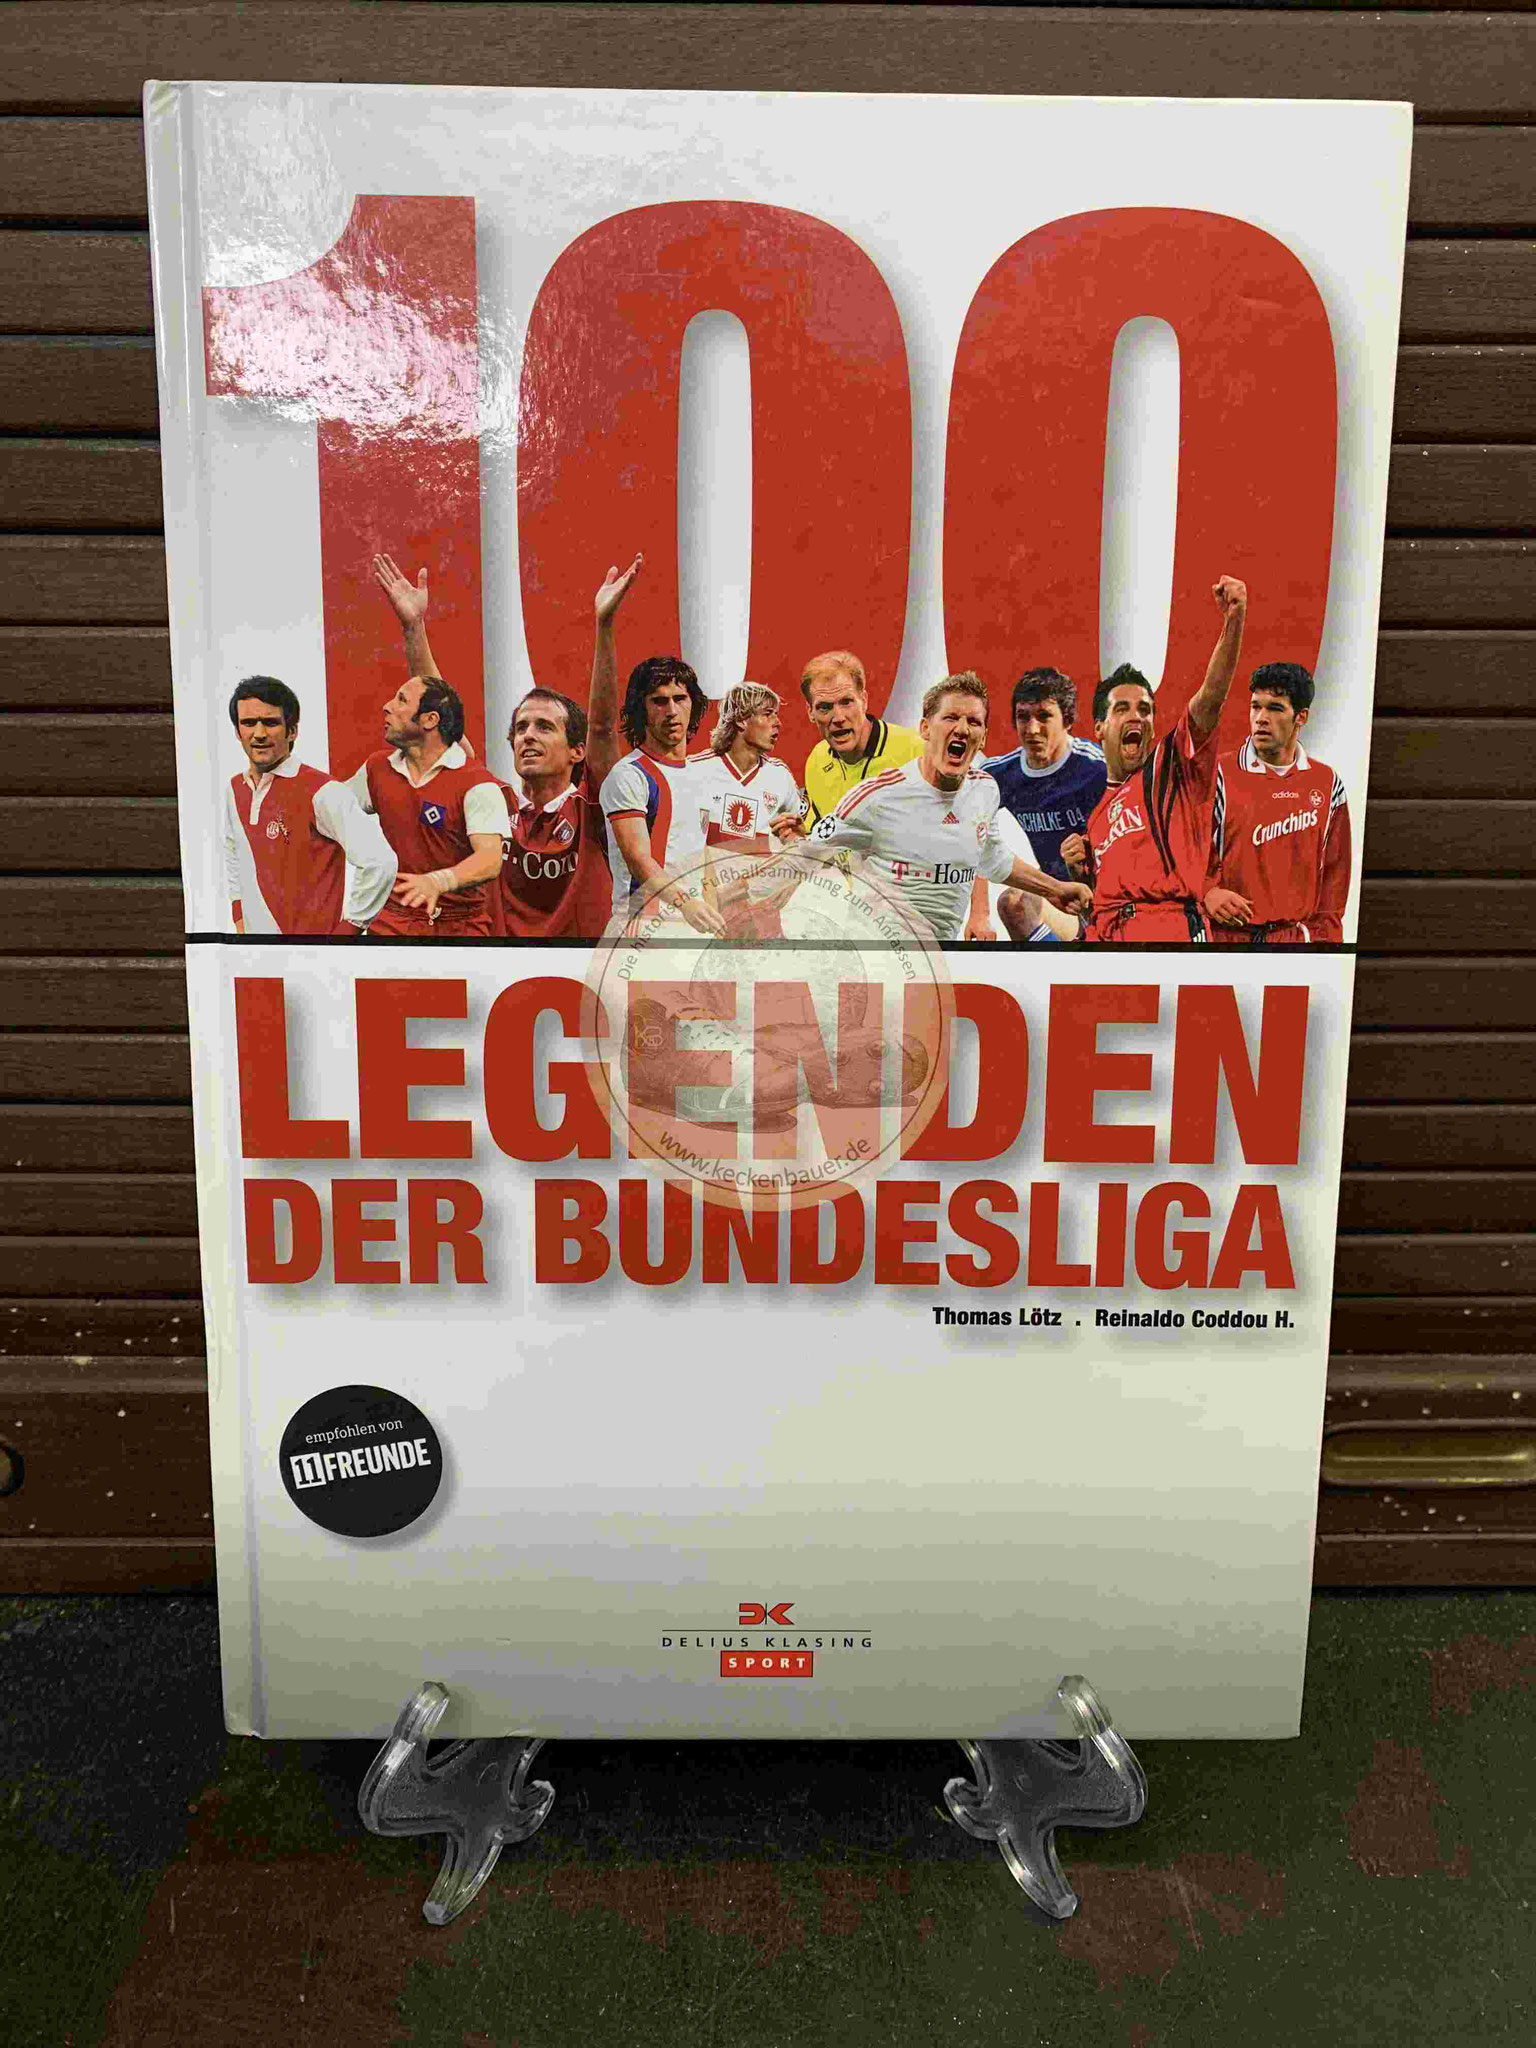 100 Legenden der Bundesliga aus dem Jahr 2009